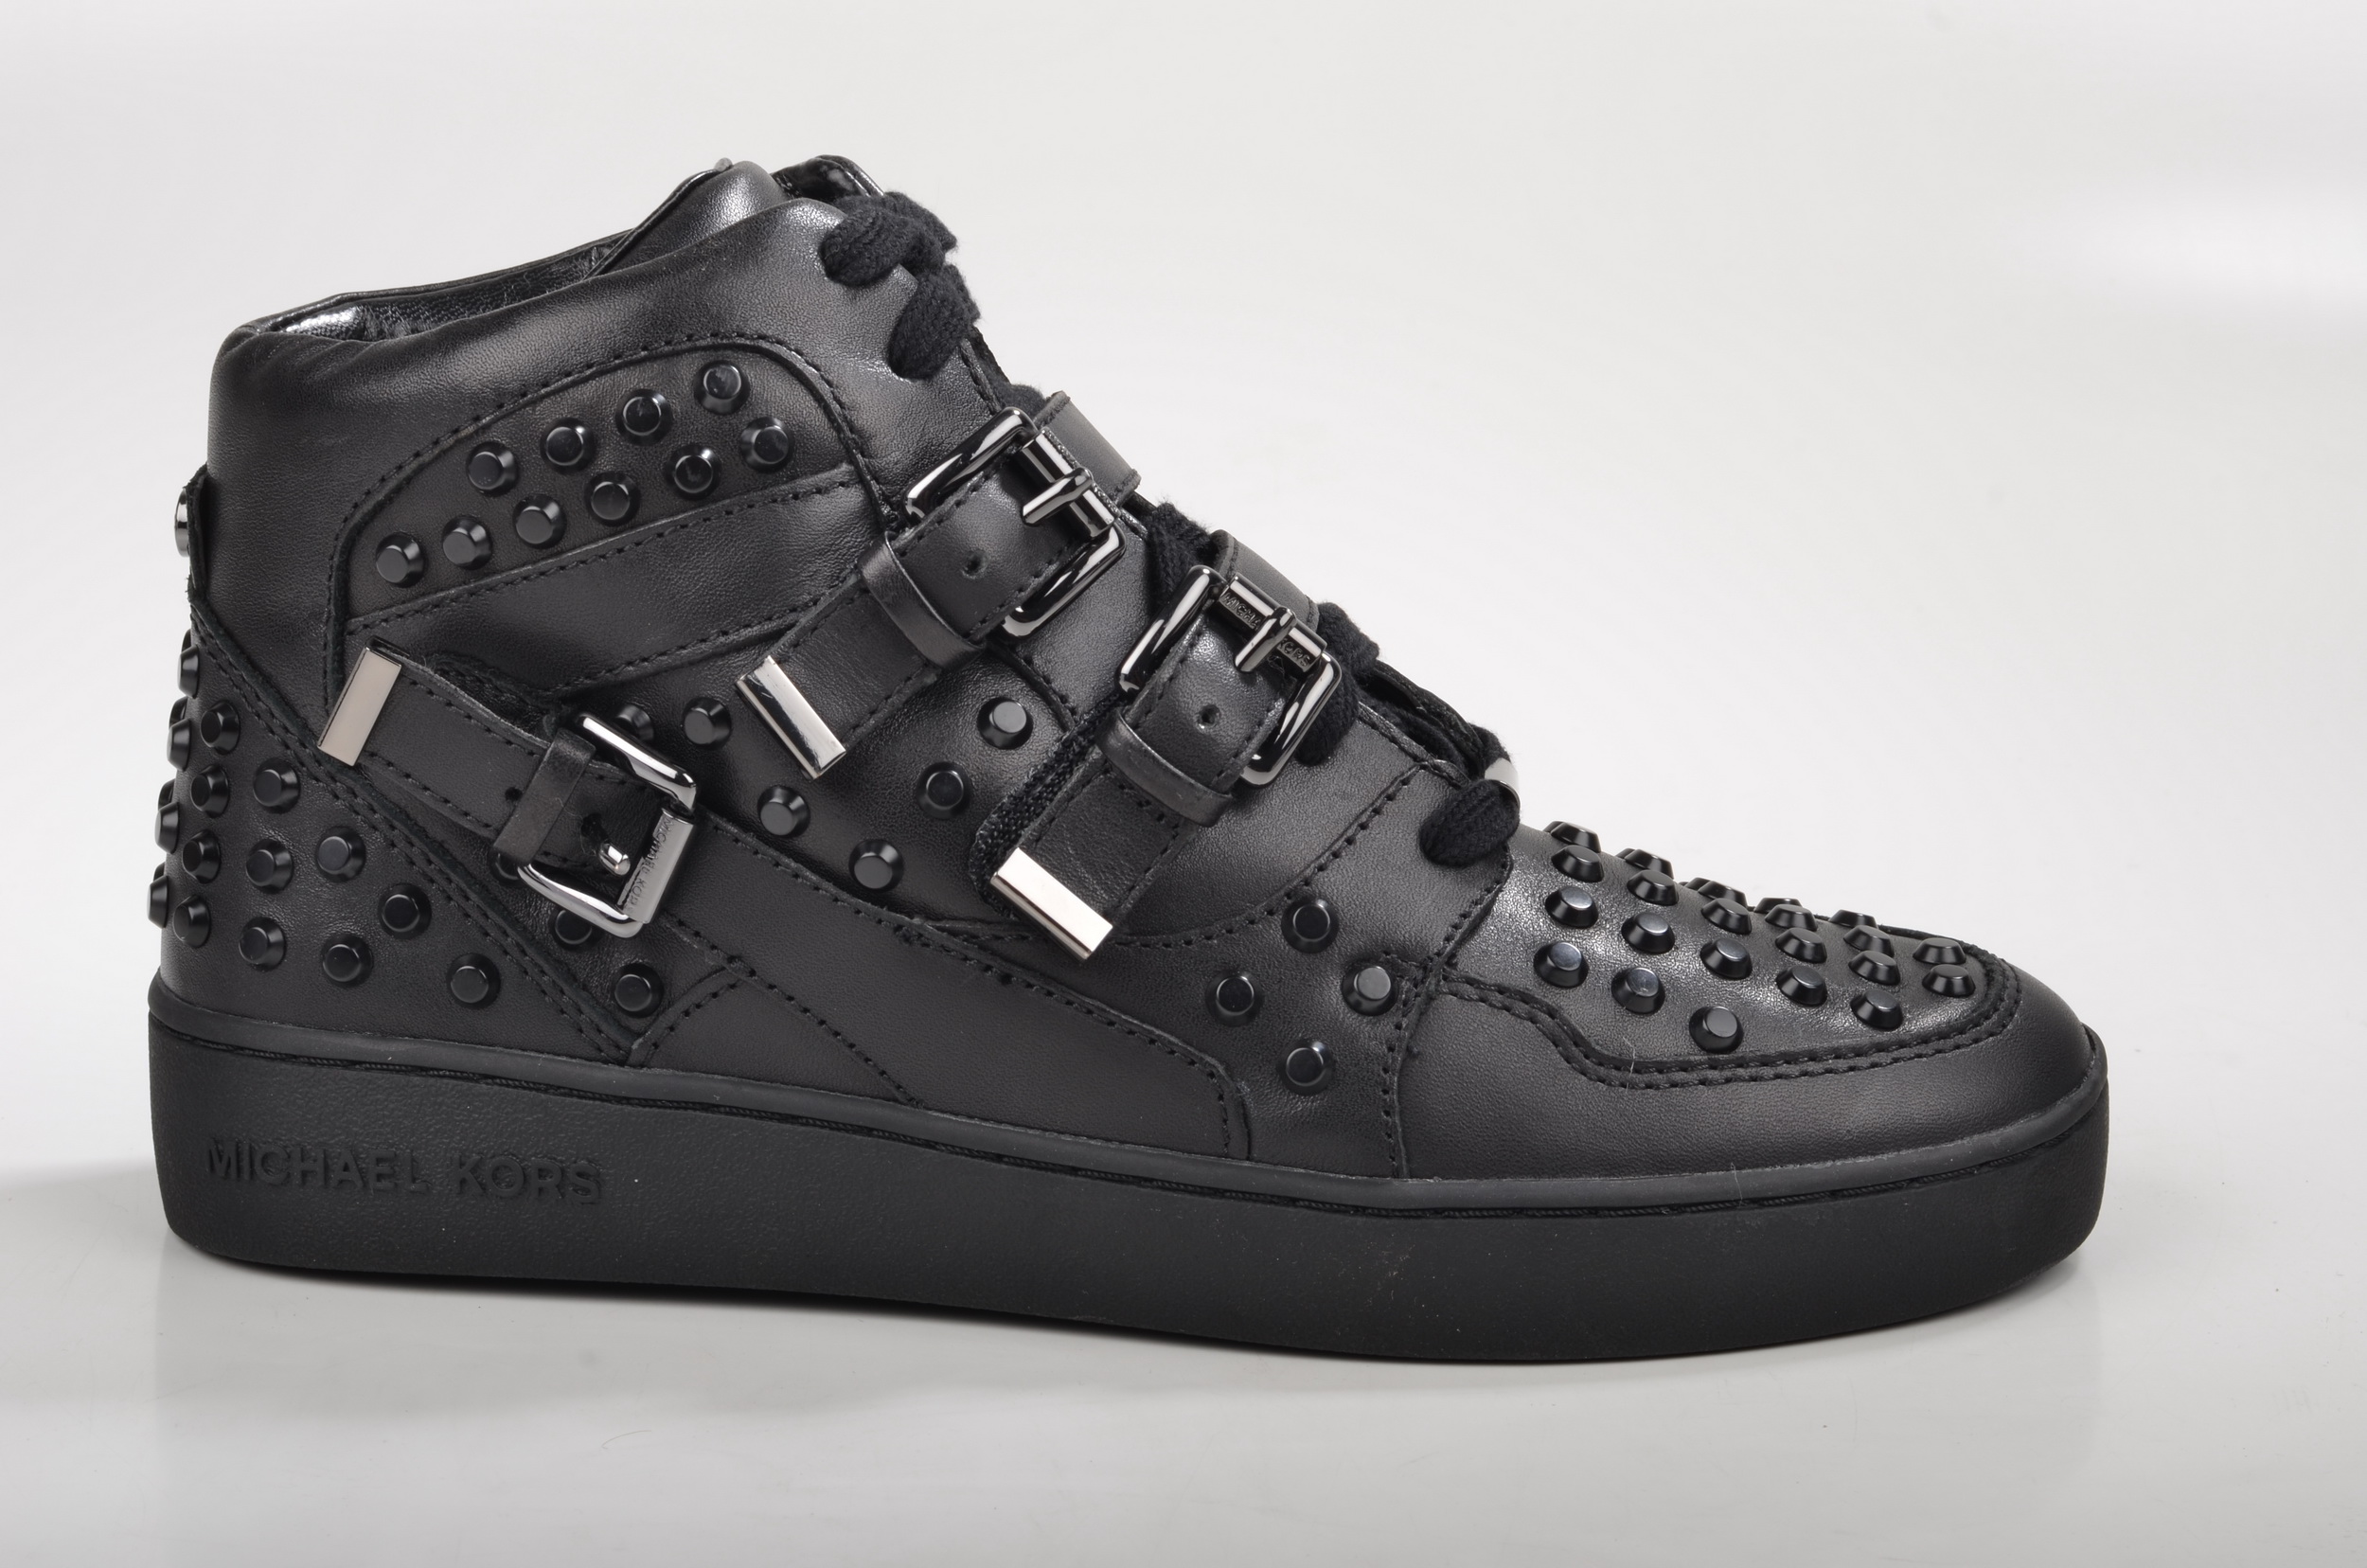 File:Michael Kors Bryn Sneaker High-Top Sneaker mit Nieten 43F4BRFS2L  Kalbsleder schwarz (3) (16406241187).jpg - Wikimedia Commons